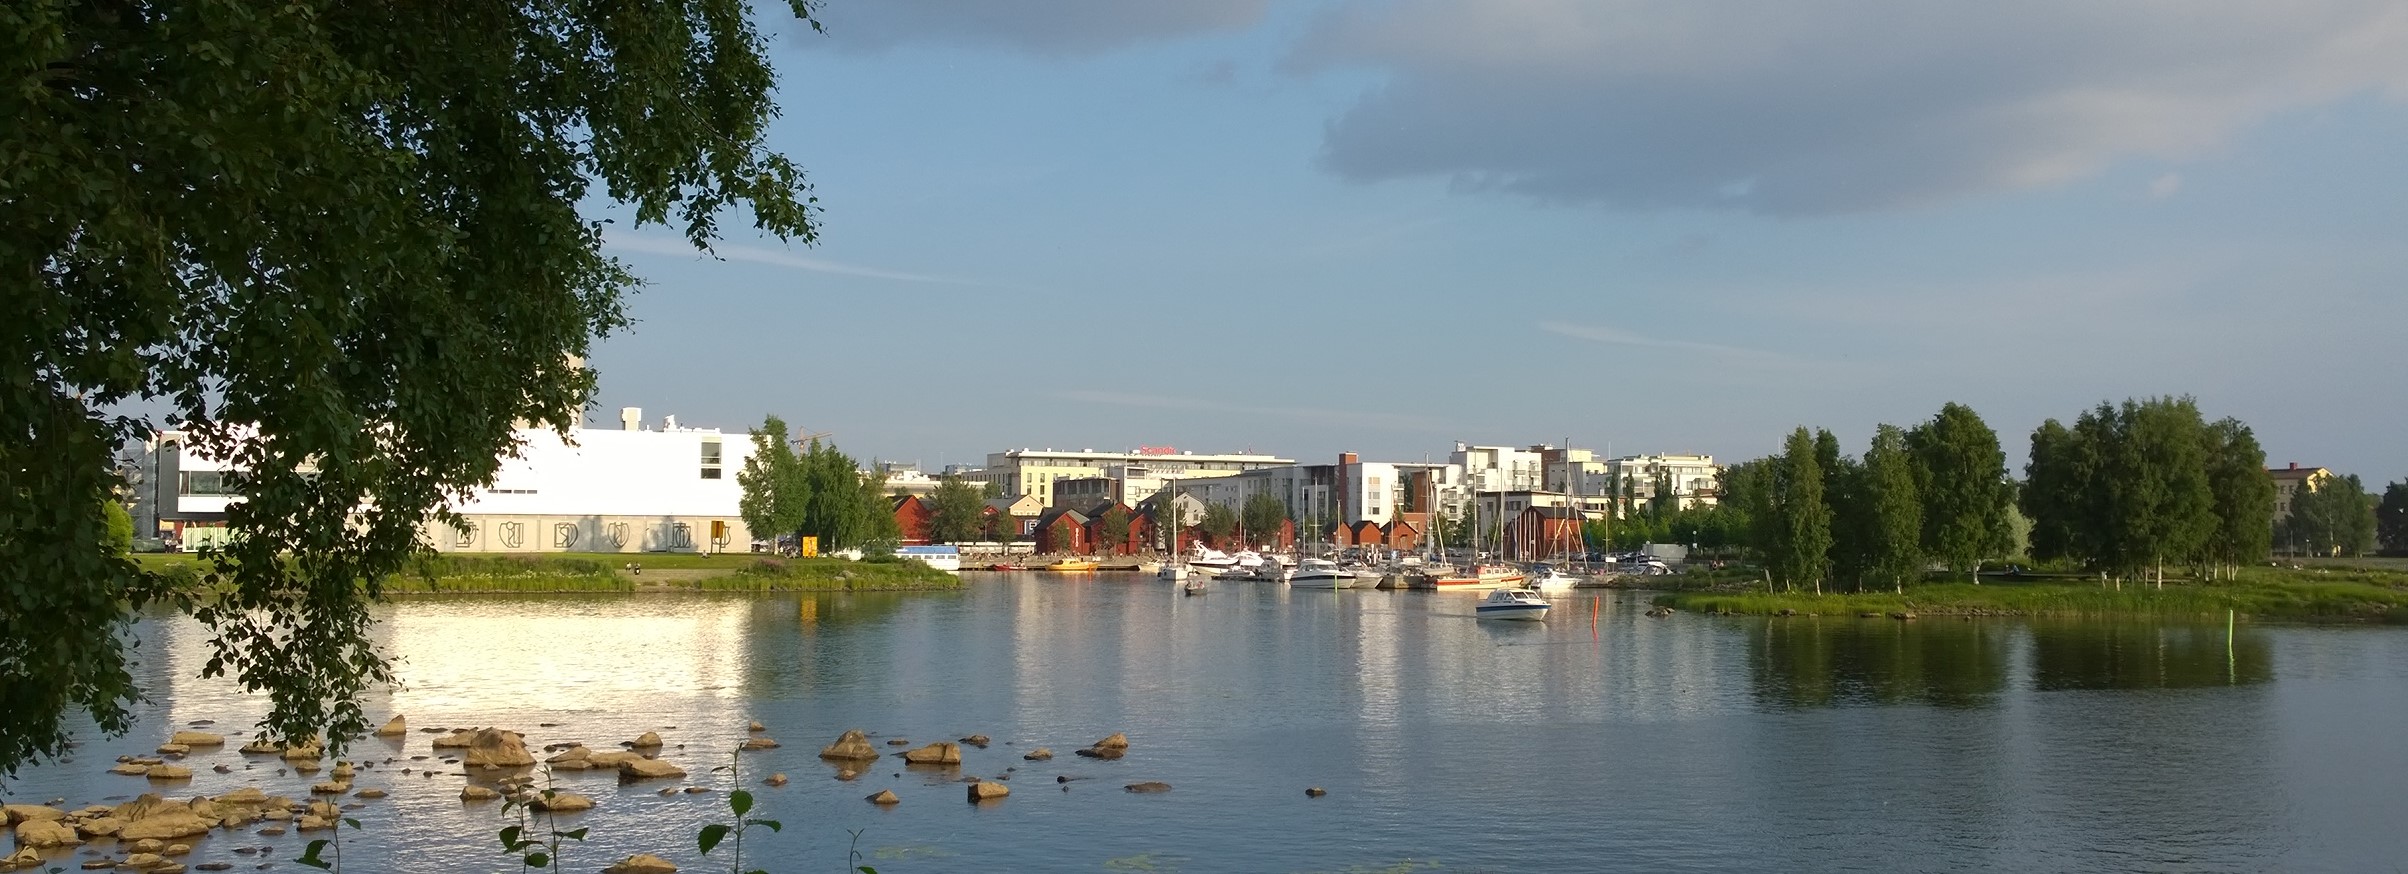 Kempele jälleen edullisin kunnallisissa kiinteistökustannuksissa - suurten kaupunkien edullisin Oulu